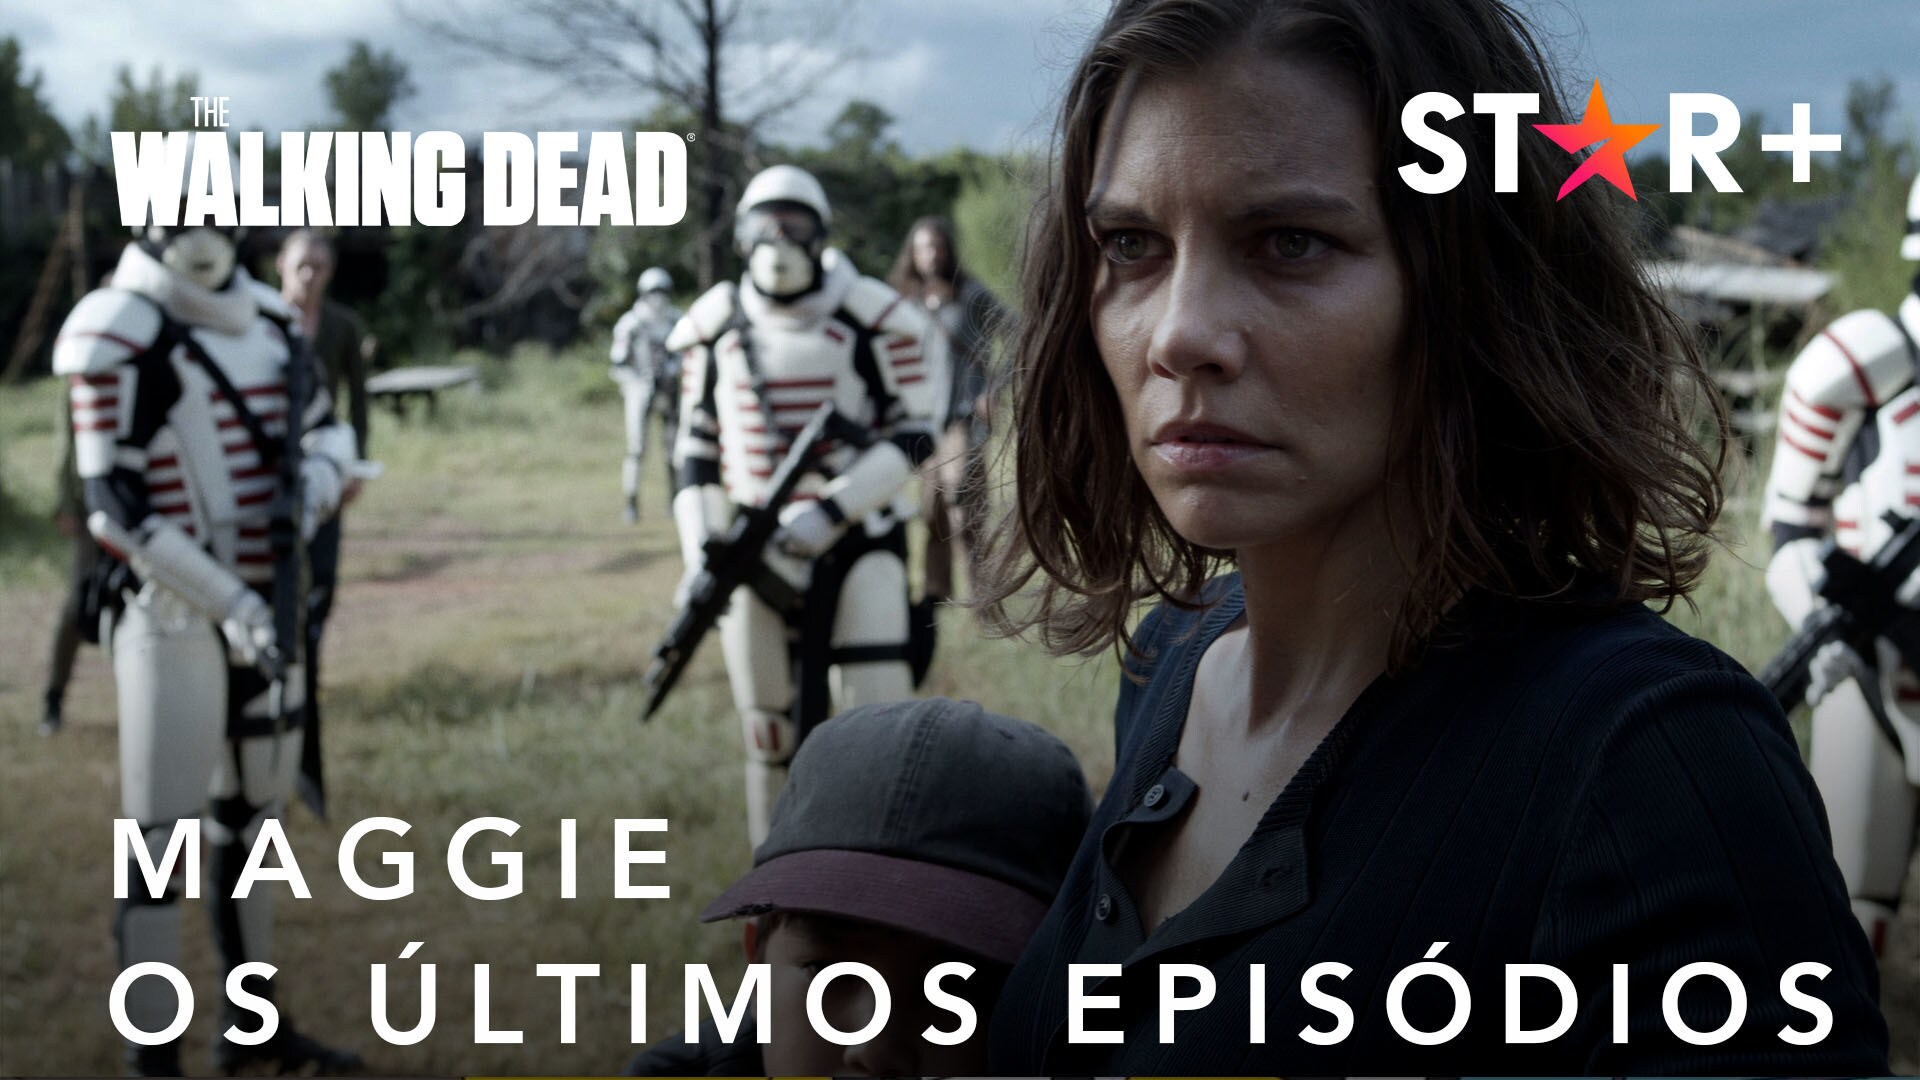 The Walking Dead | Maggie | Os Últimos Episódios | Star+